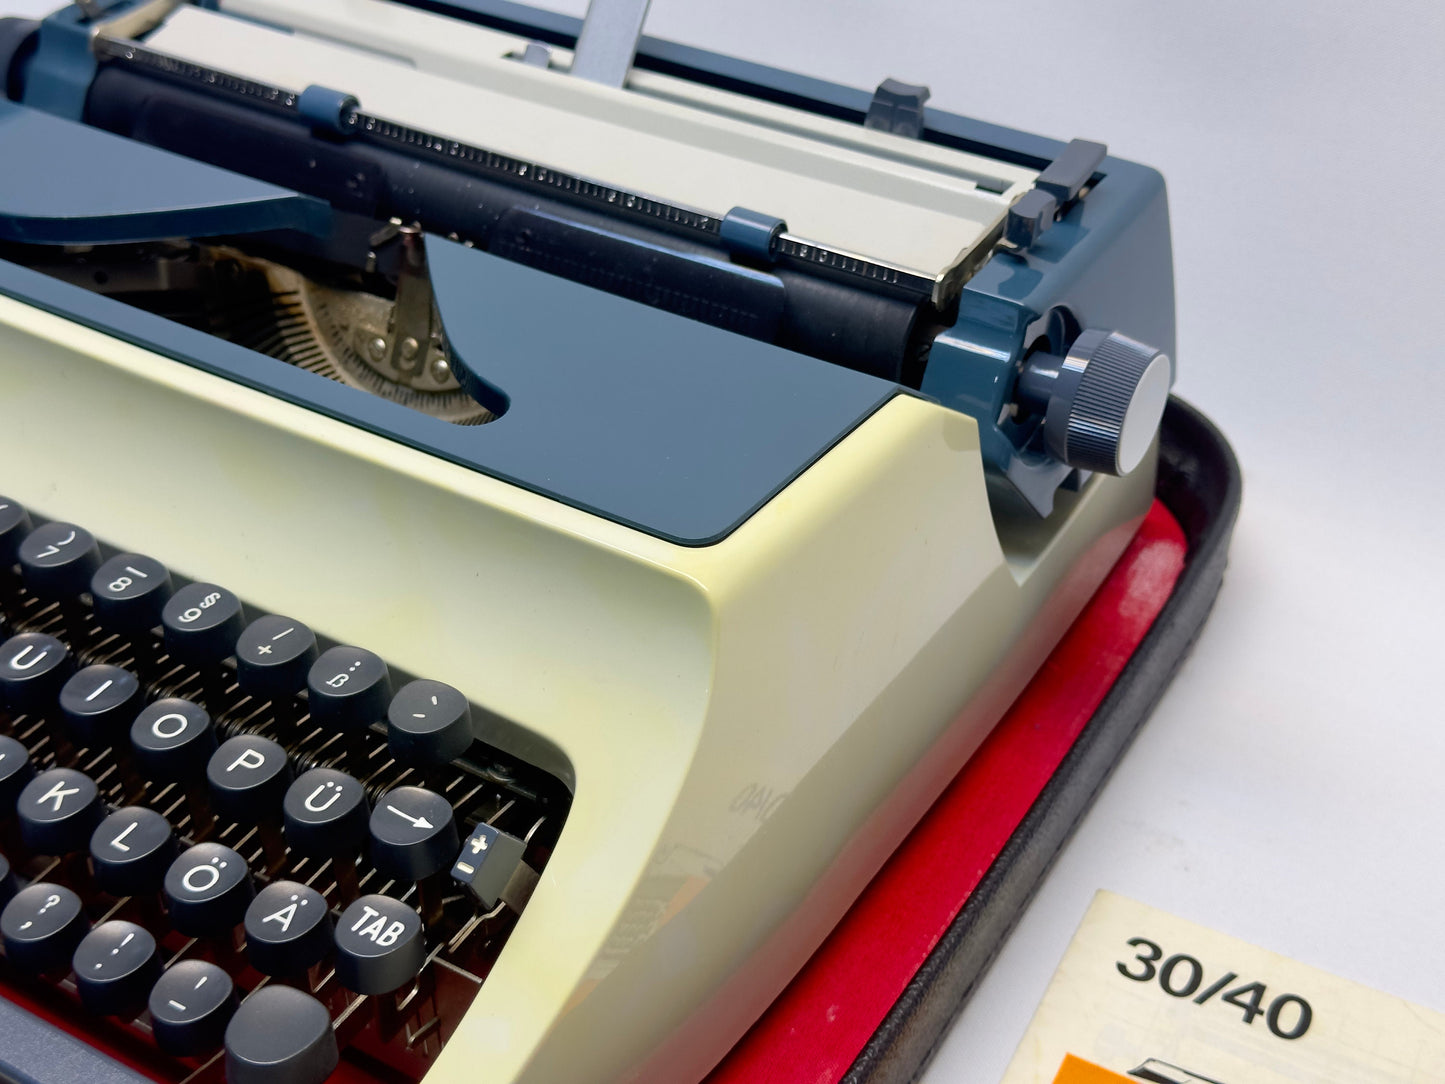 Nice Gift!- Erika Typewriter in Elegant White with Black Accents,Antique Typewriter,Working Typewriter,